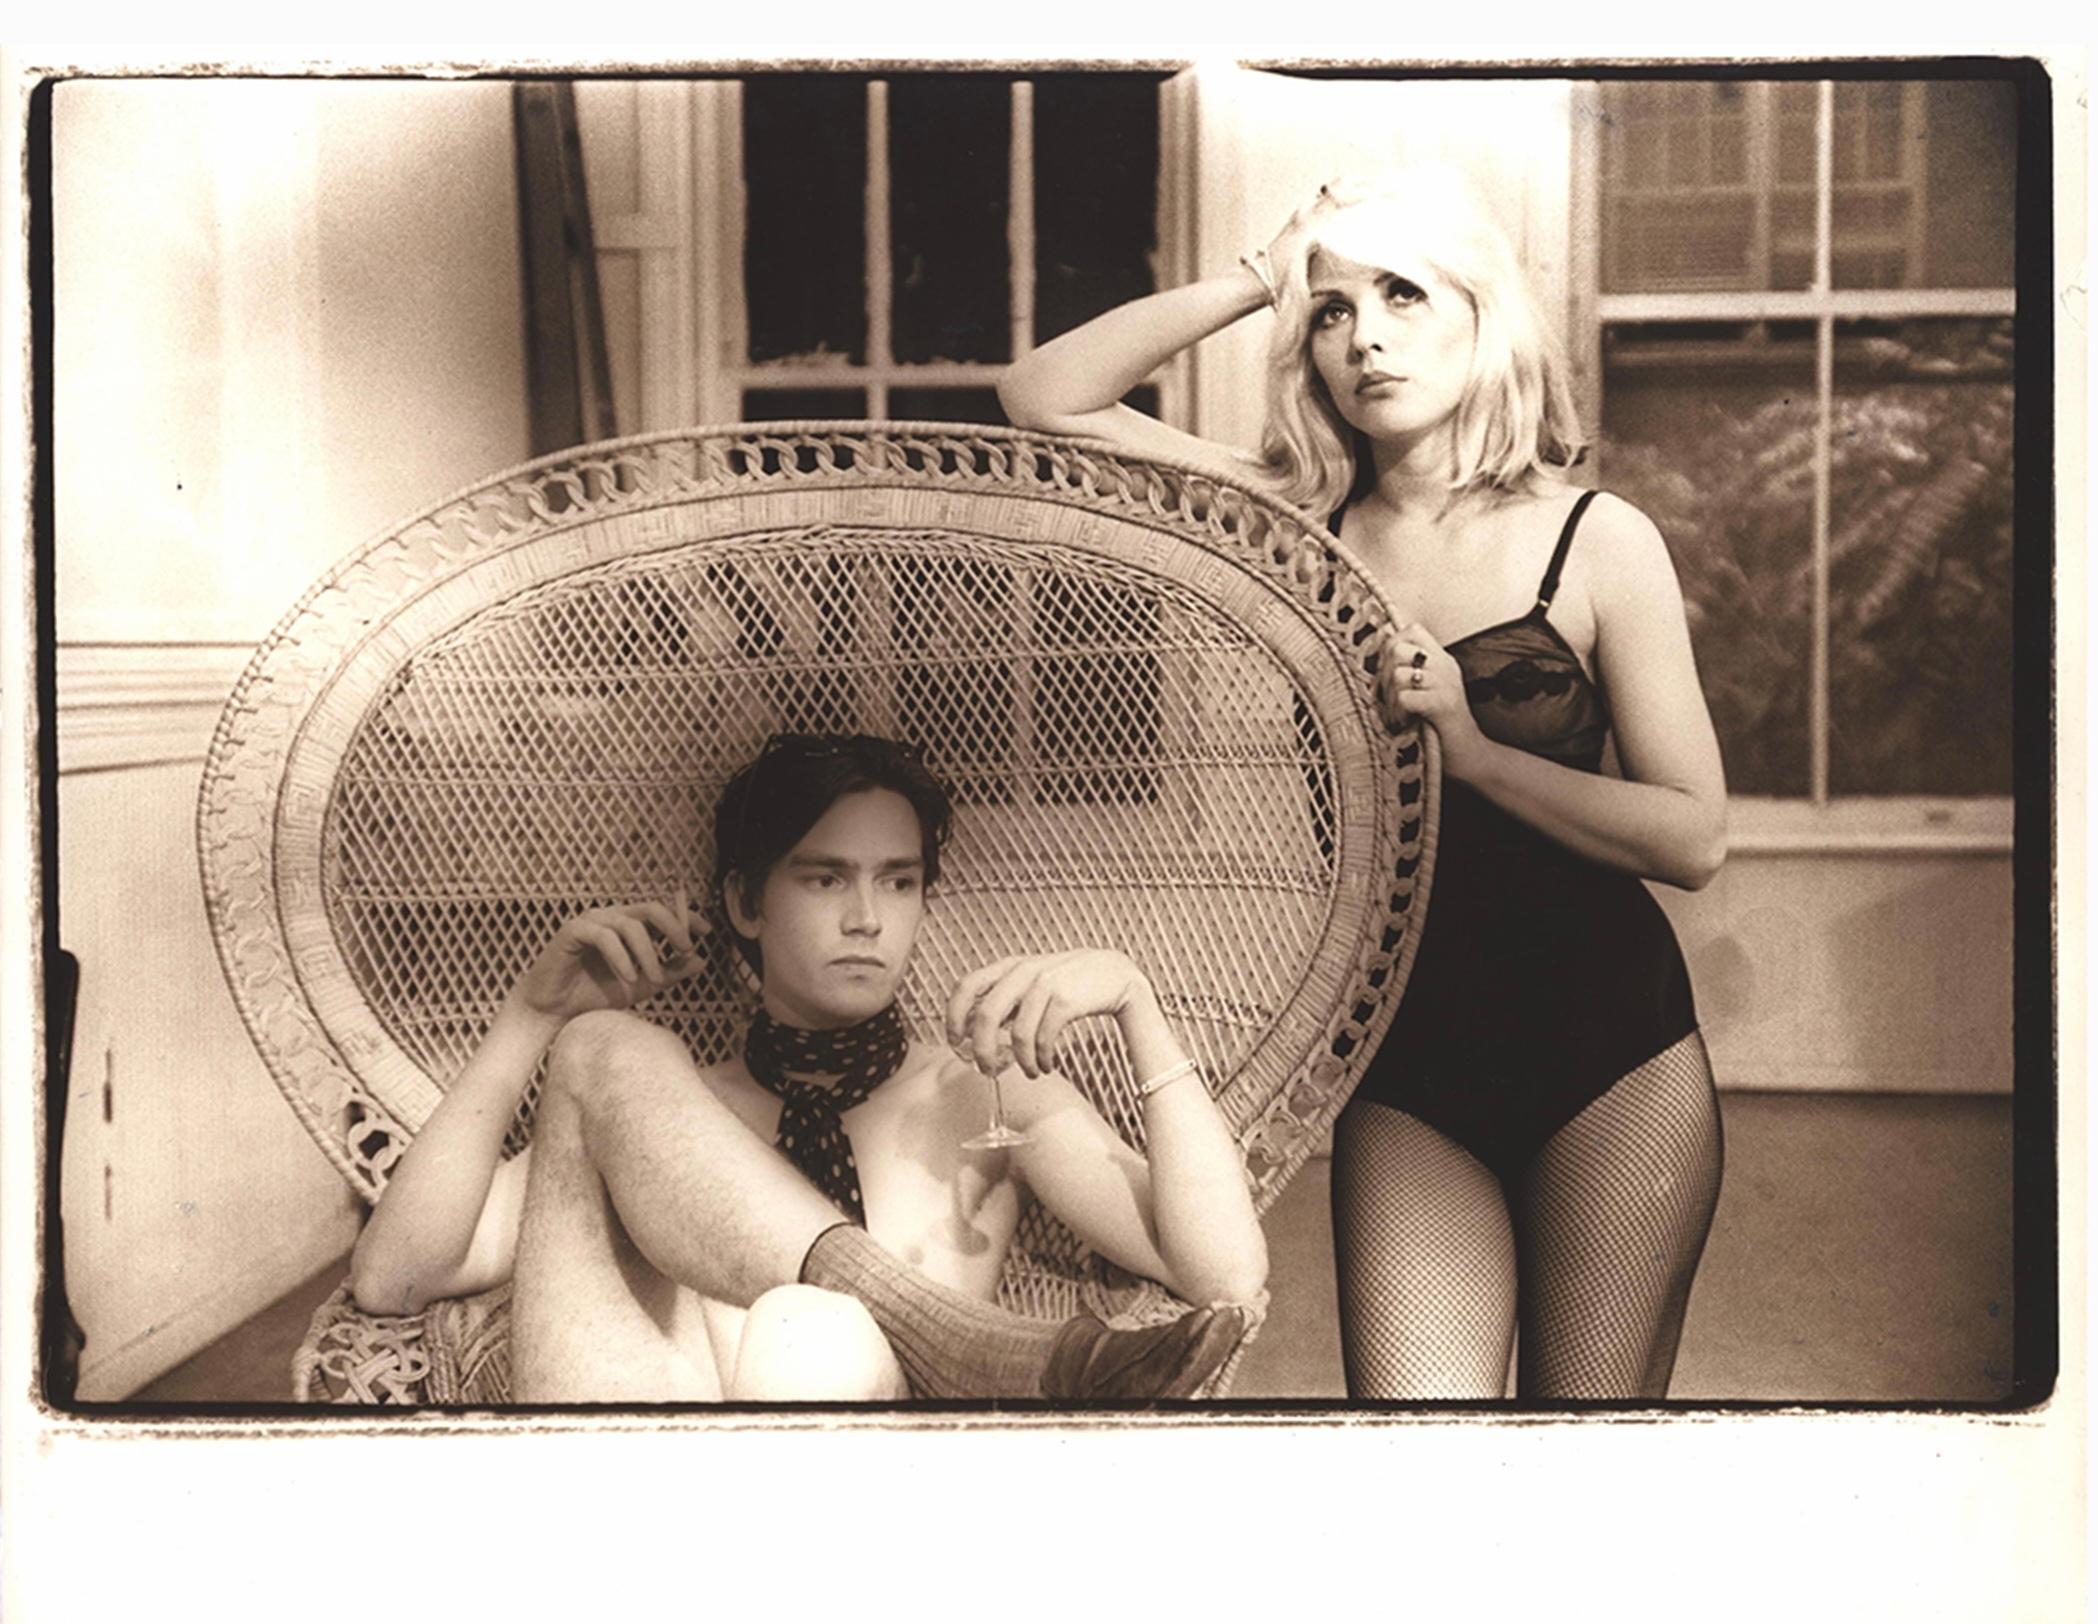 Debbie Harry & Harris sur le plateau de 'Unmade Beds' 1976 par le célèbre photographe new-yorkais Fernando Natalici. 
Cette photographie originale d'époque a été prise sur le plateau de tournage de 